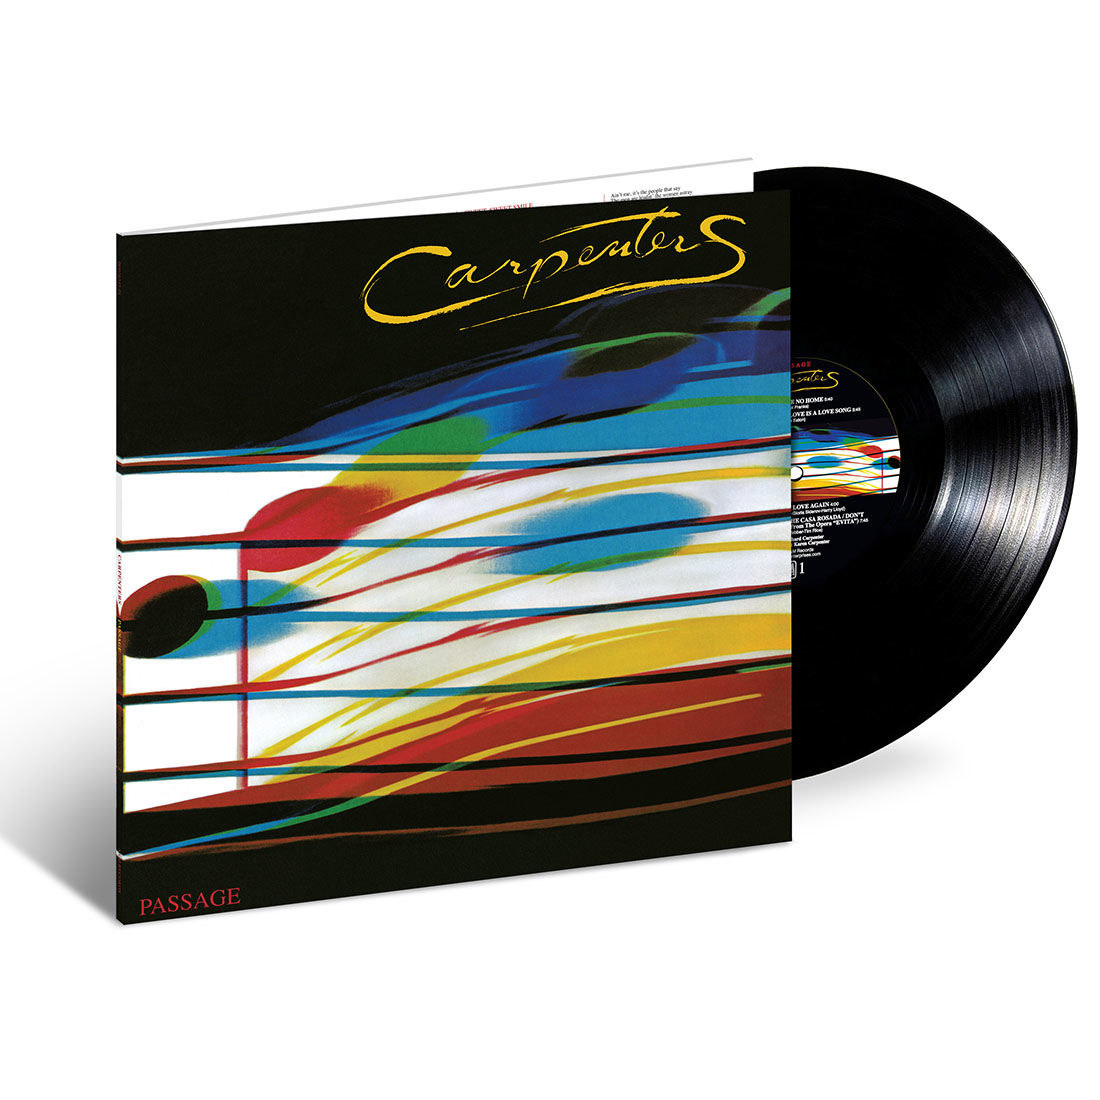 The Carpenters - Passage: Vinyl LP